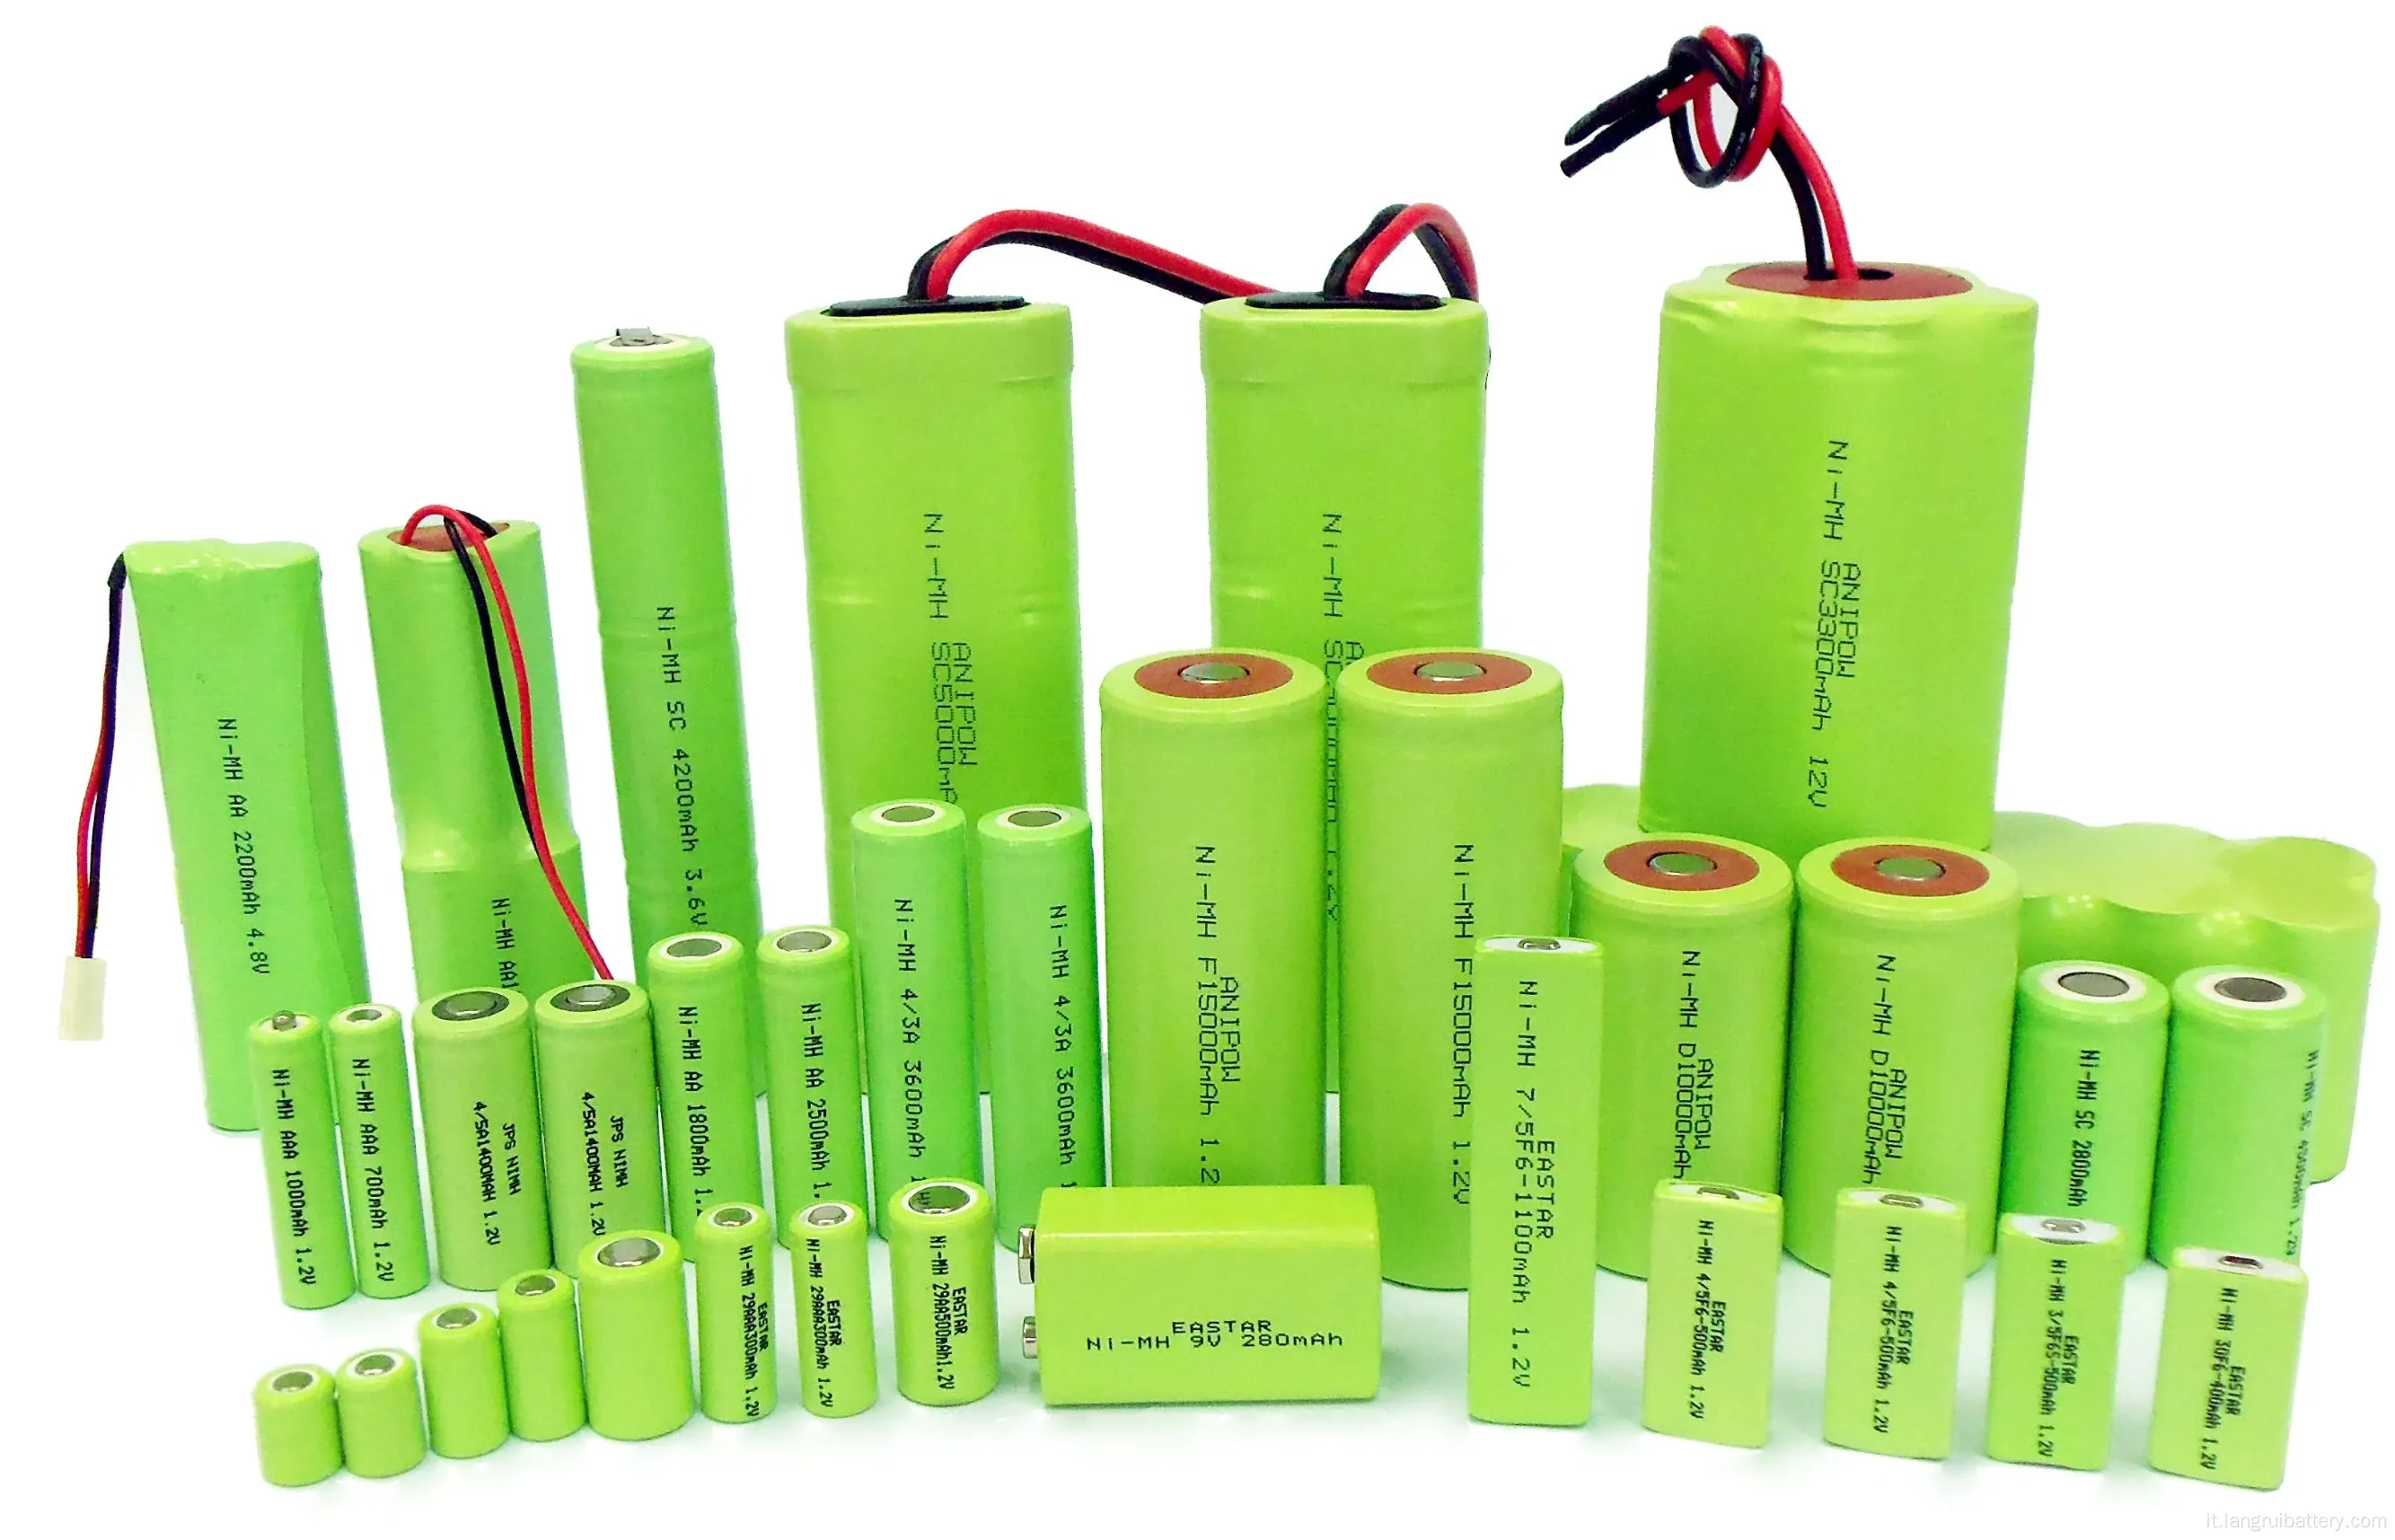 Batteria NIMH da 1,2 V perfetta di durabilità